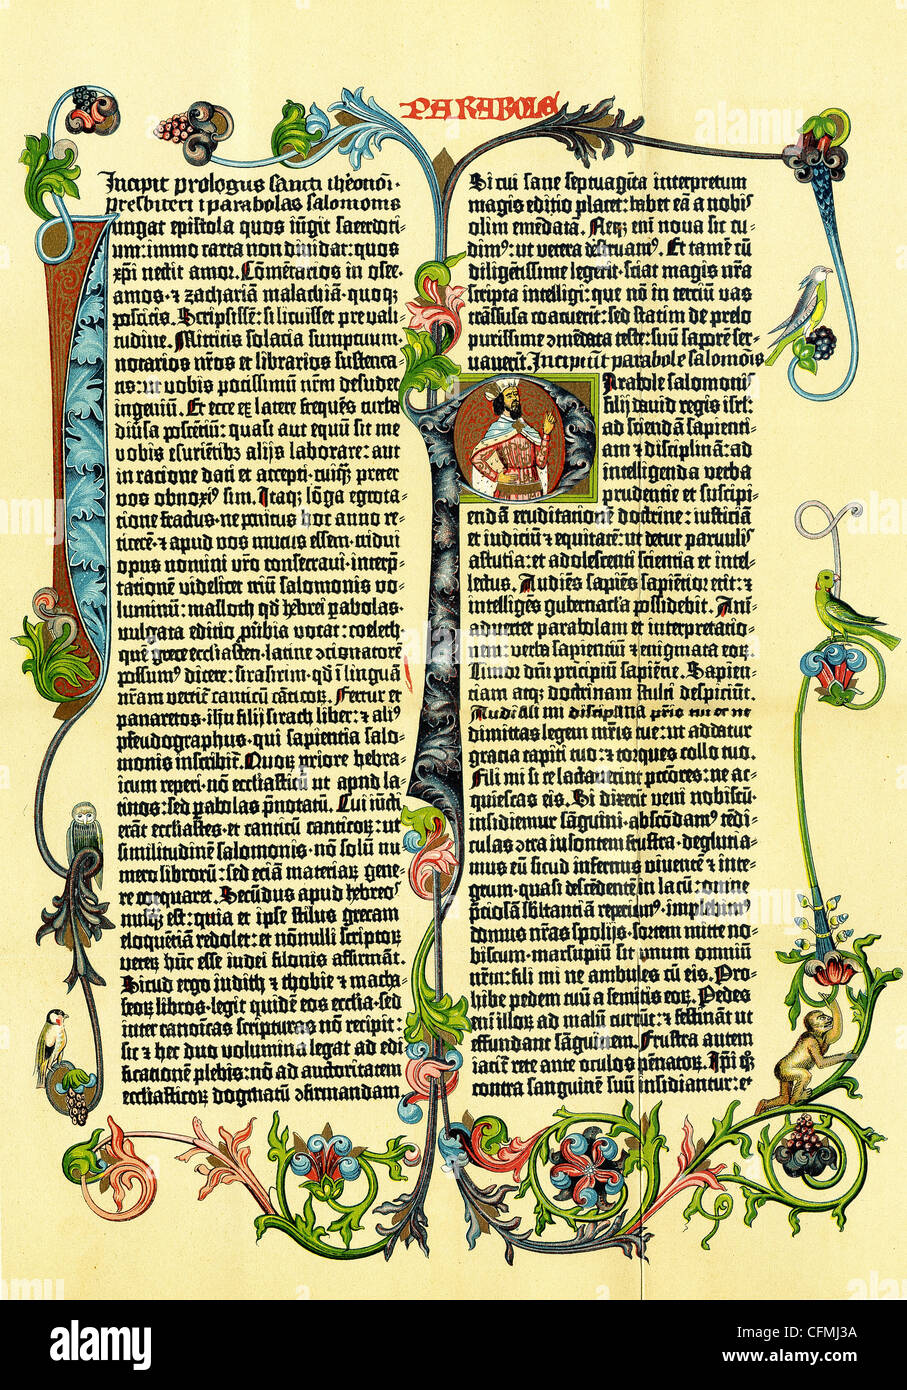 Diese illustrierte Seite ist aus der Gutenberg-Bibel, auch bekannt als die 42 Linie Bibel, entstand um 1453-1456. Stockfoto